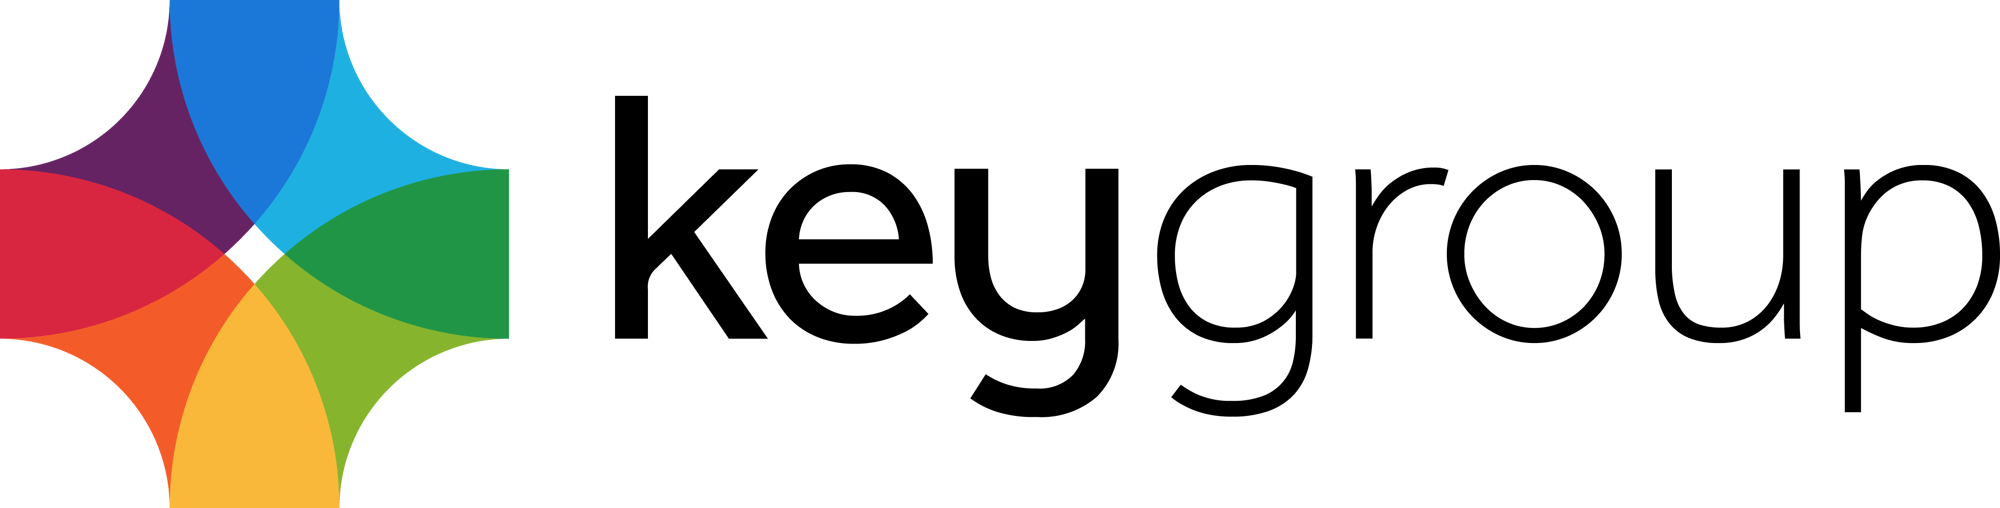 key-group-logo-dark